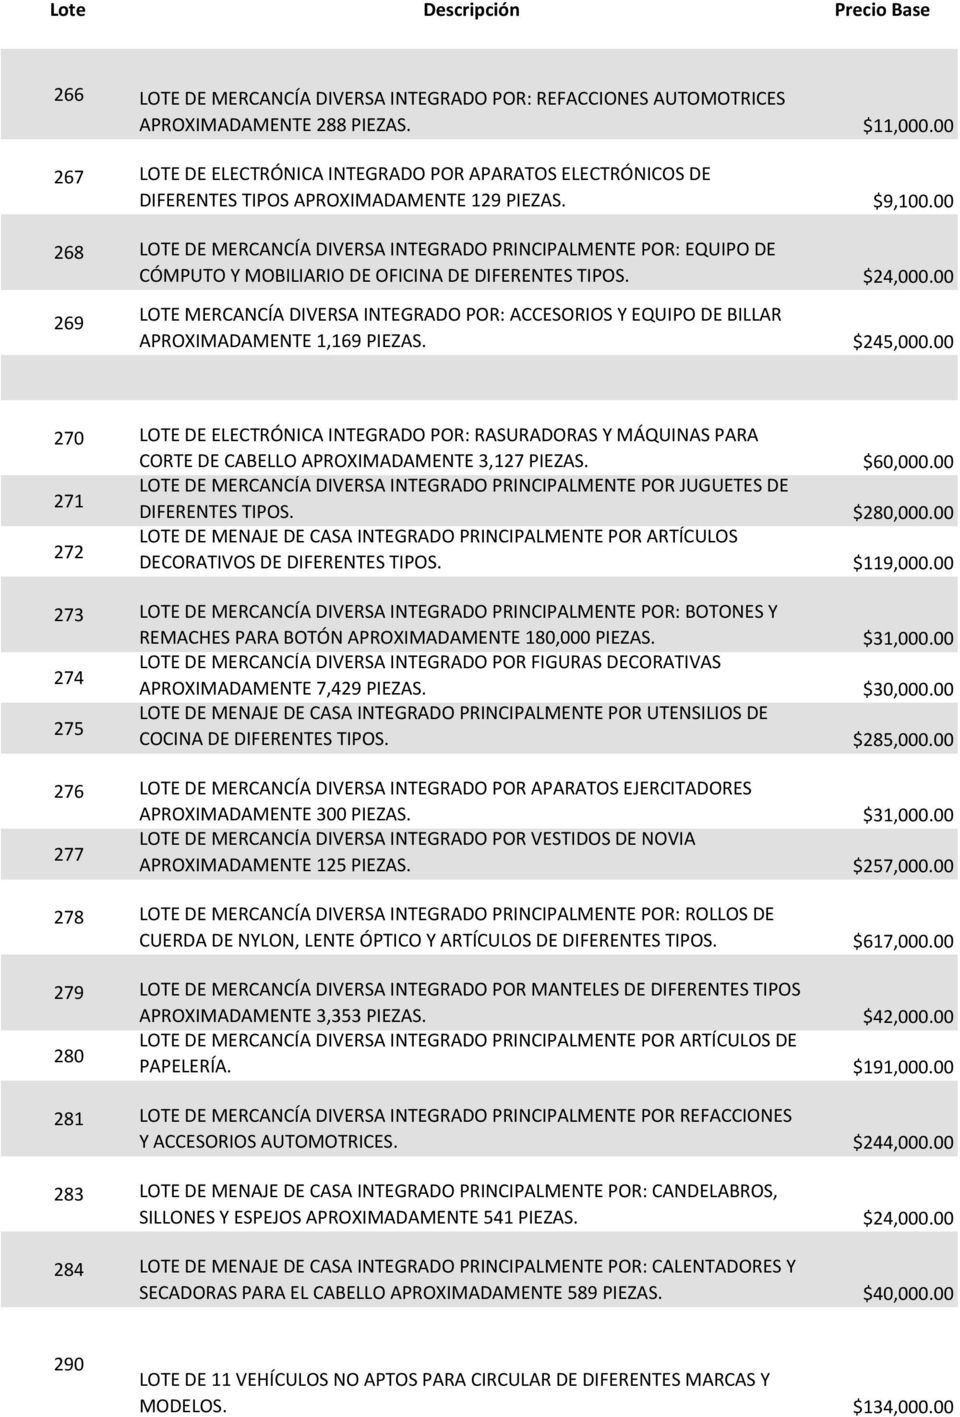 00 268 LOTE DE MERCANCÍA DIVERSA INTEGRADO PRINCIPALMENTE POR: EQUIPO DE CÓMPUTO Y MOBILIARIO DE OFICINA DE DIFERENTES TIPOS. $24,000.